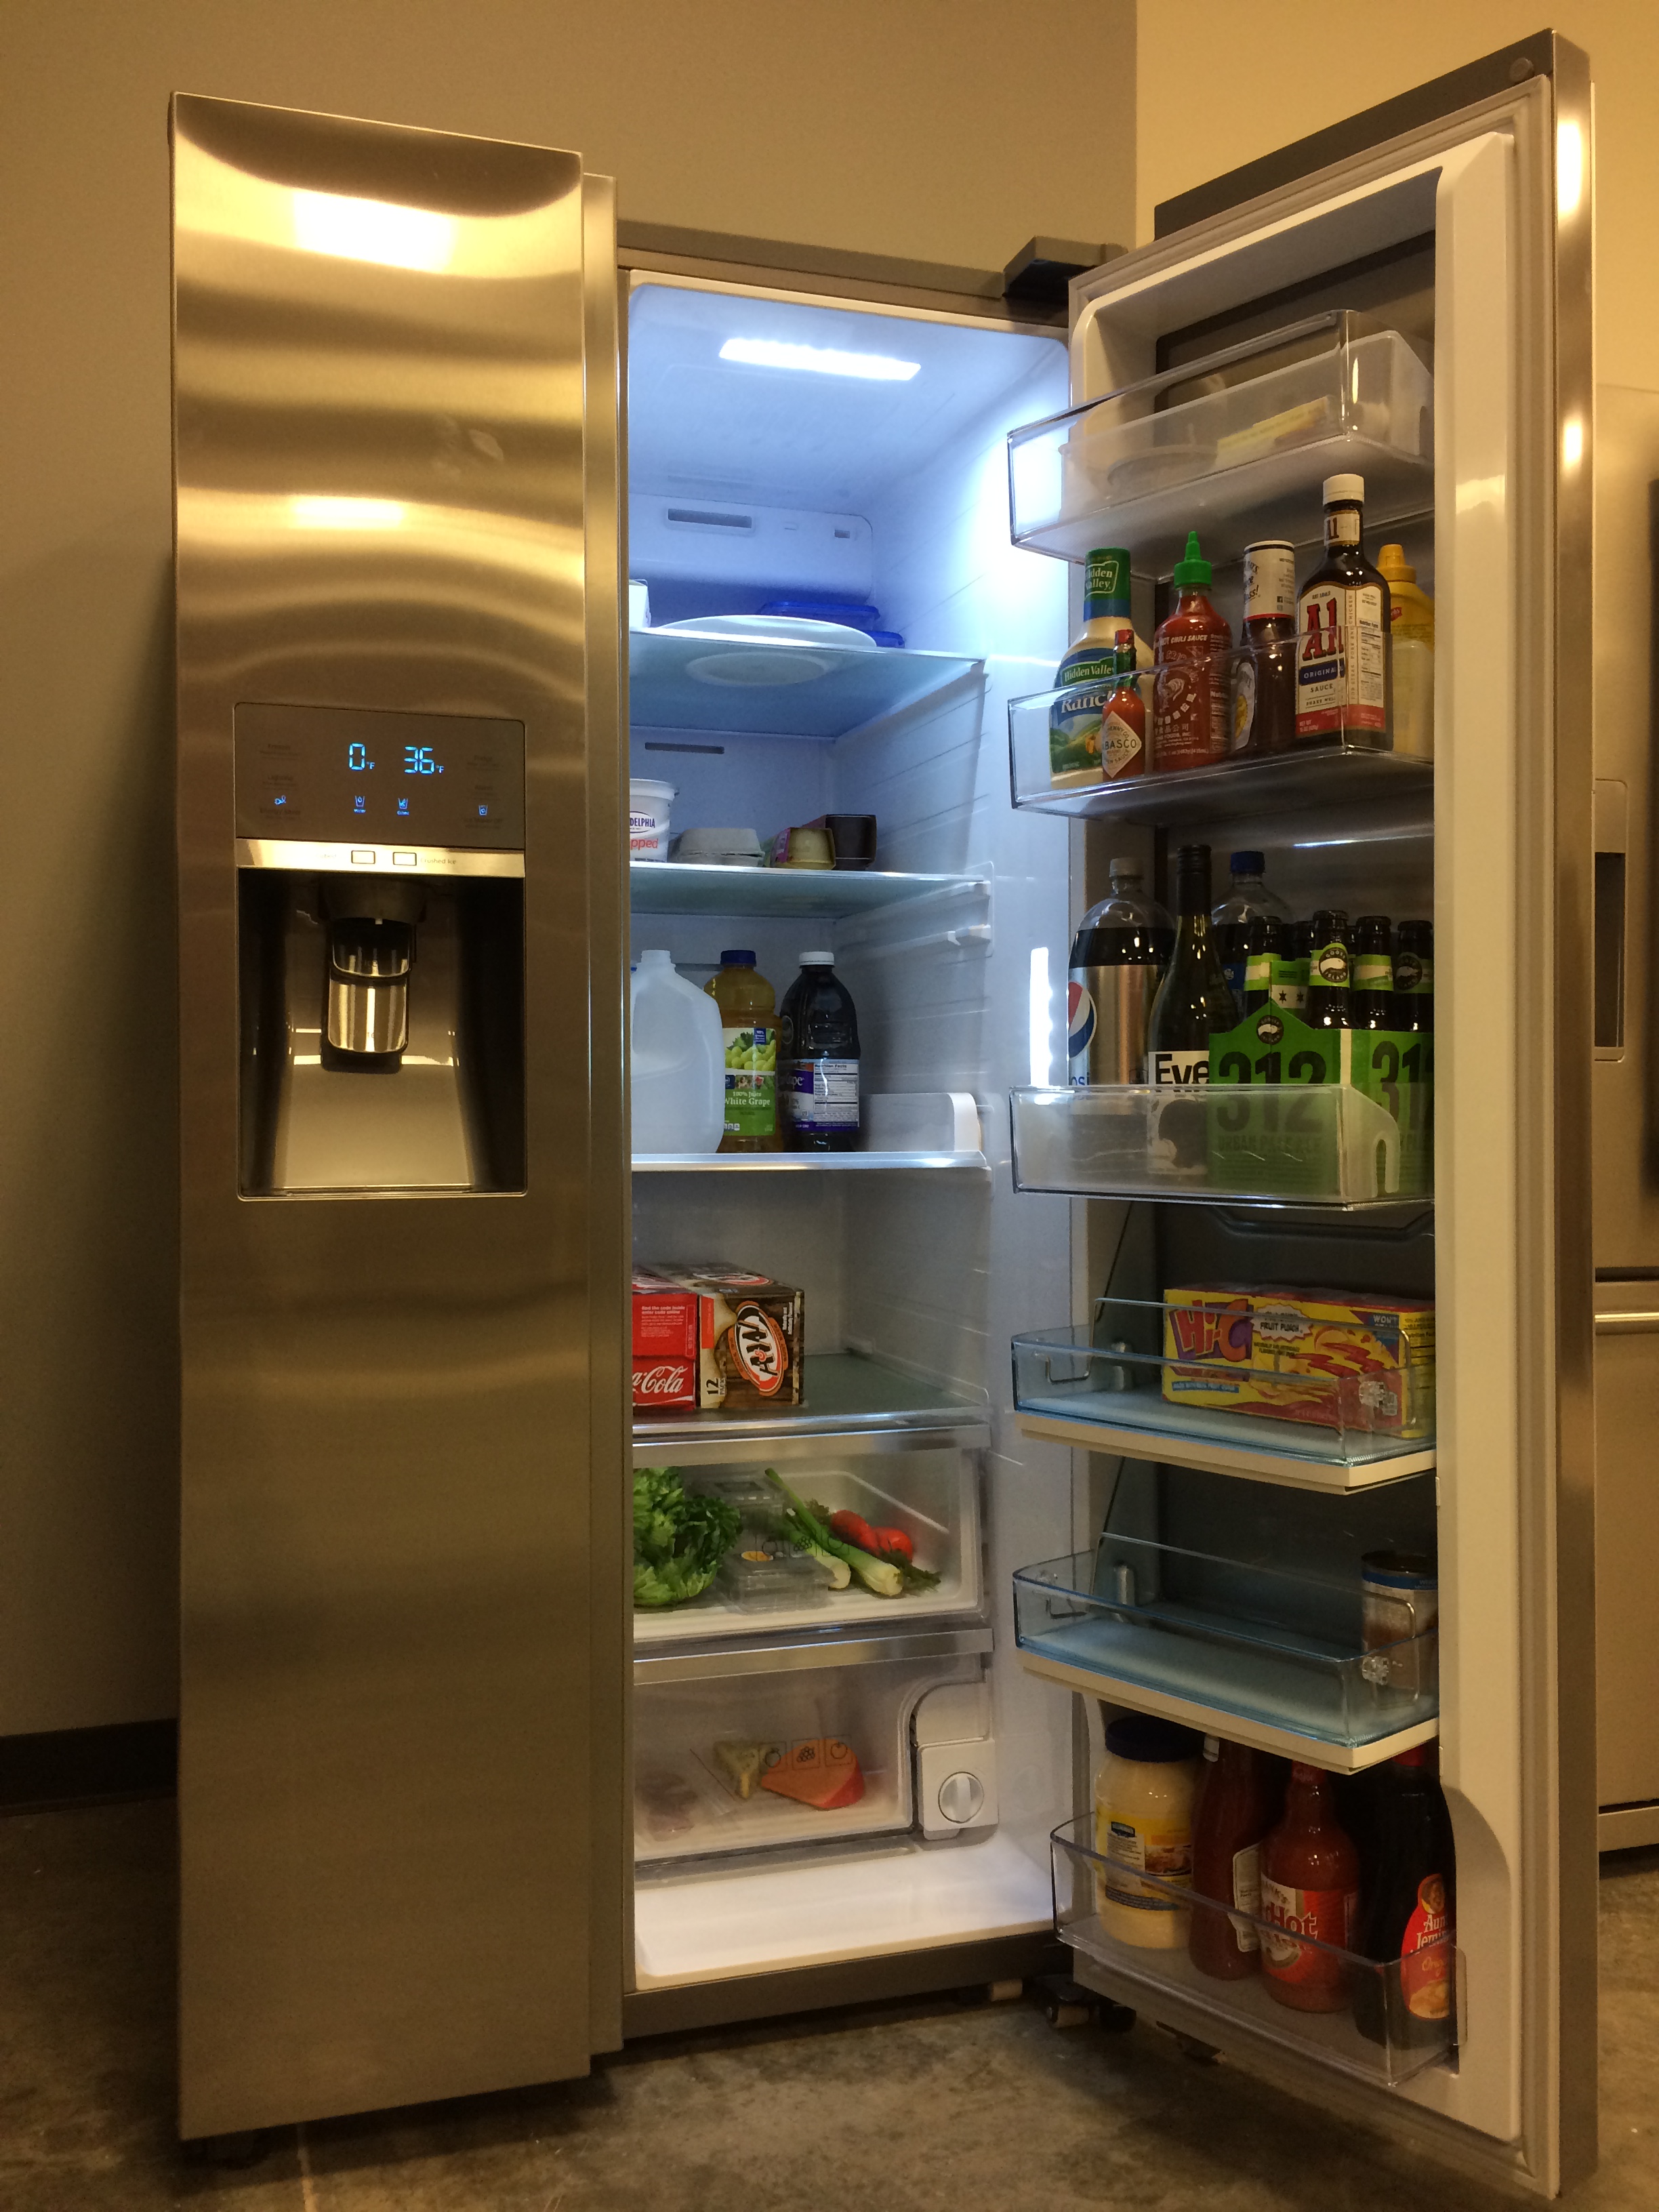 samsung-food-showcase-3k-fridge-basic-load-testing.jpg